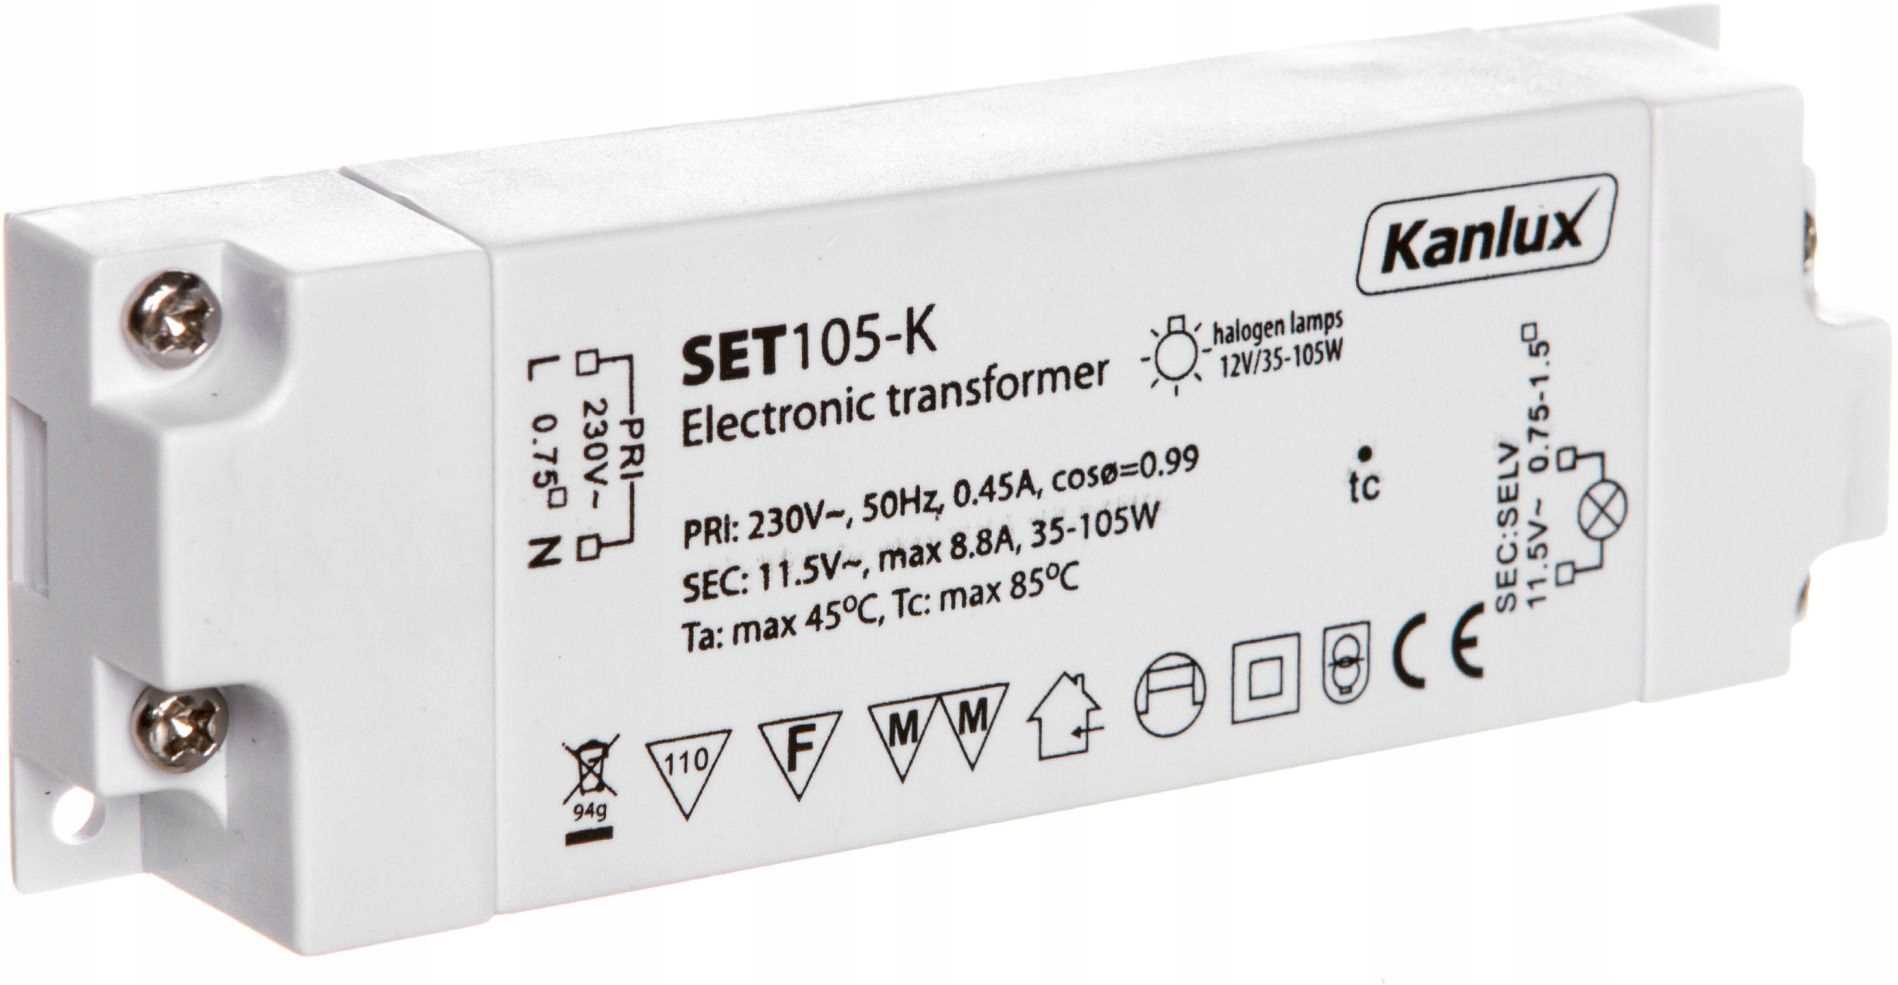 Transformateur LED ISOLED 12V/DC, 0-50W, ultra plat, SELV